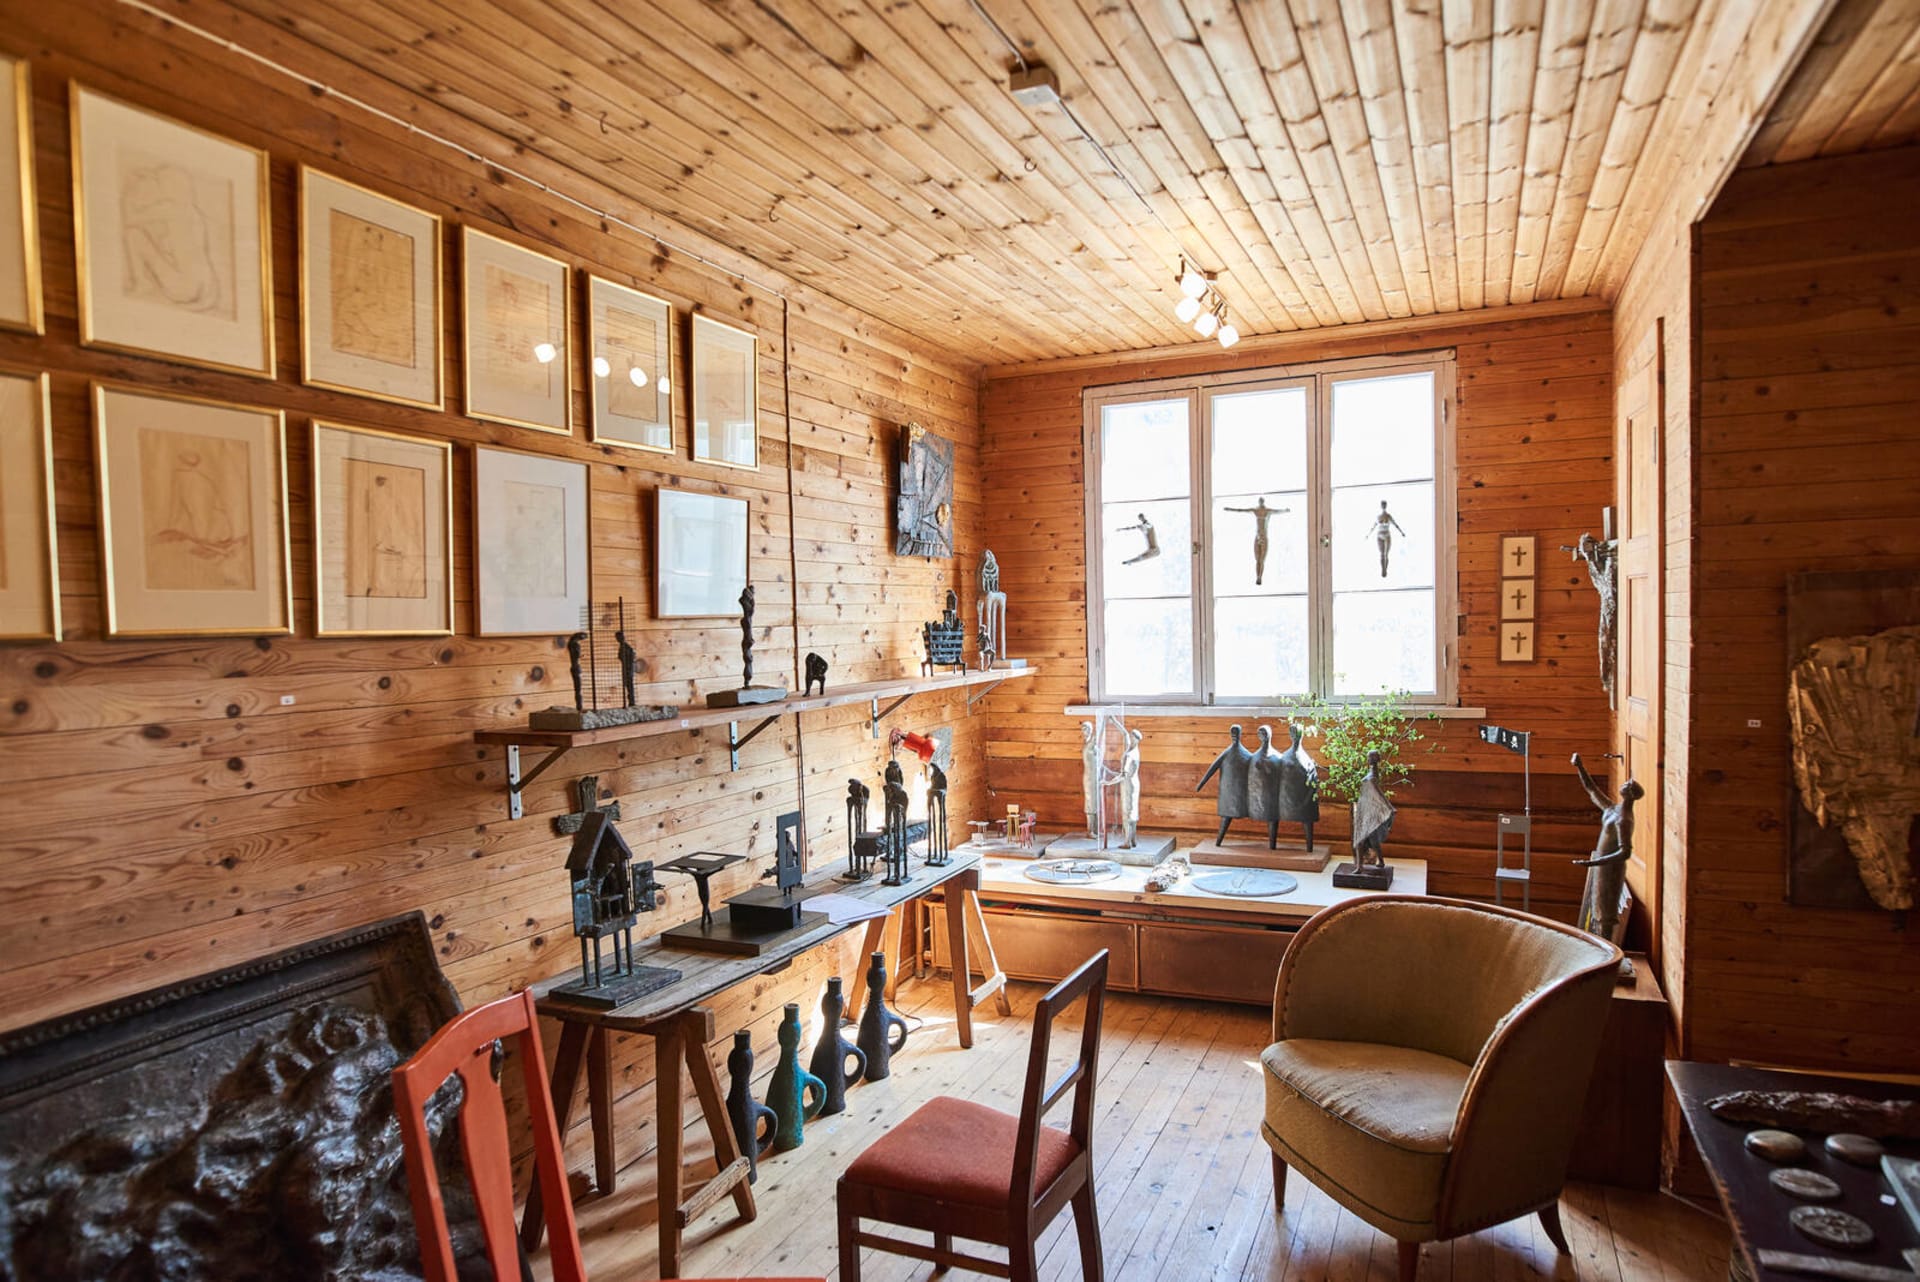 Huone, jossa on seinillä, ikkunoilla ja pöydillä esillä Ossi Somman taideteoksia.